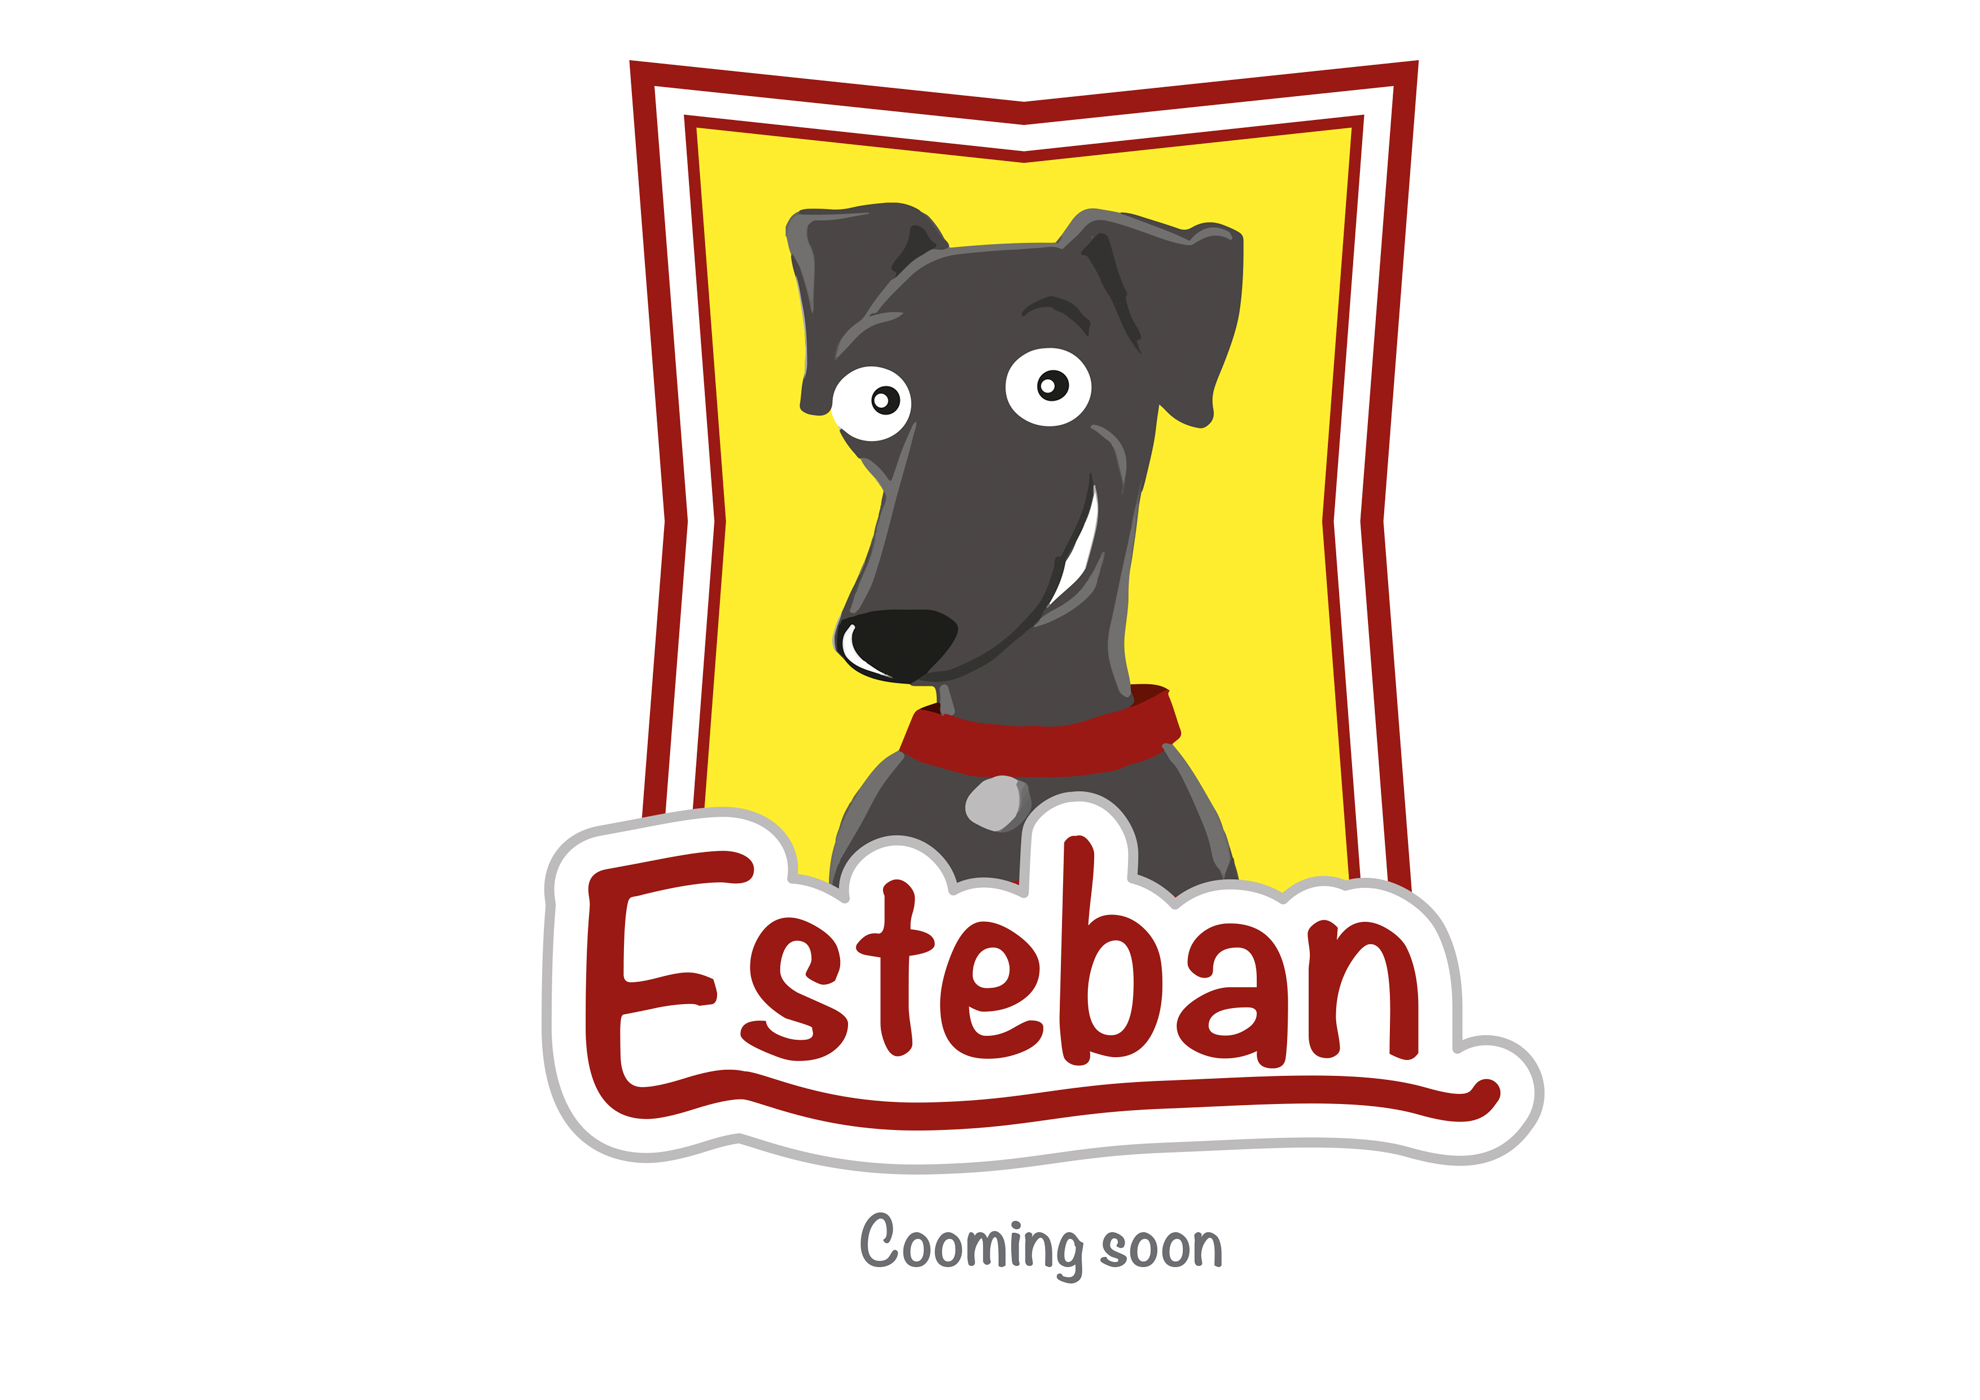 Esteban - Coming soon